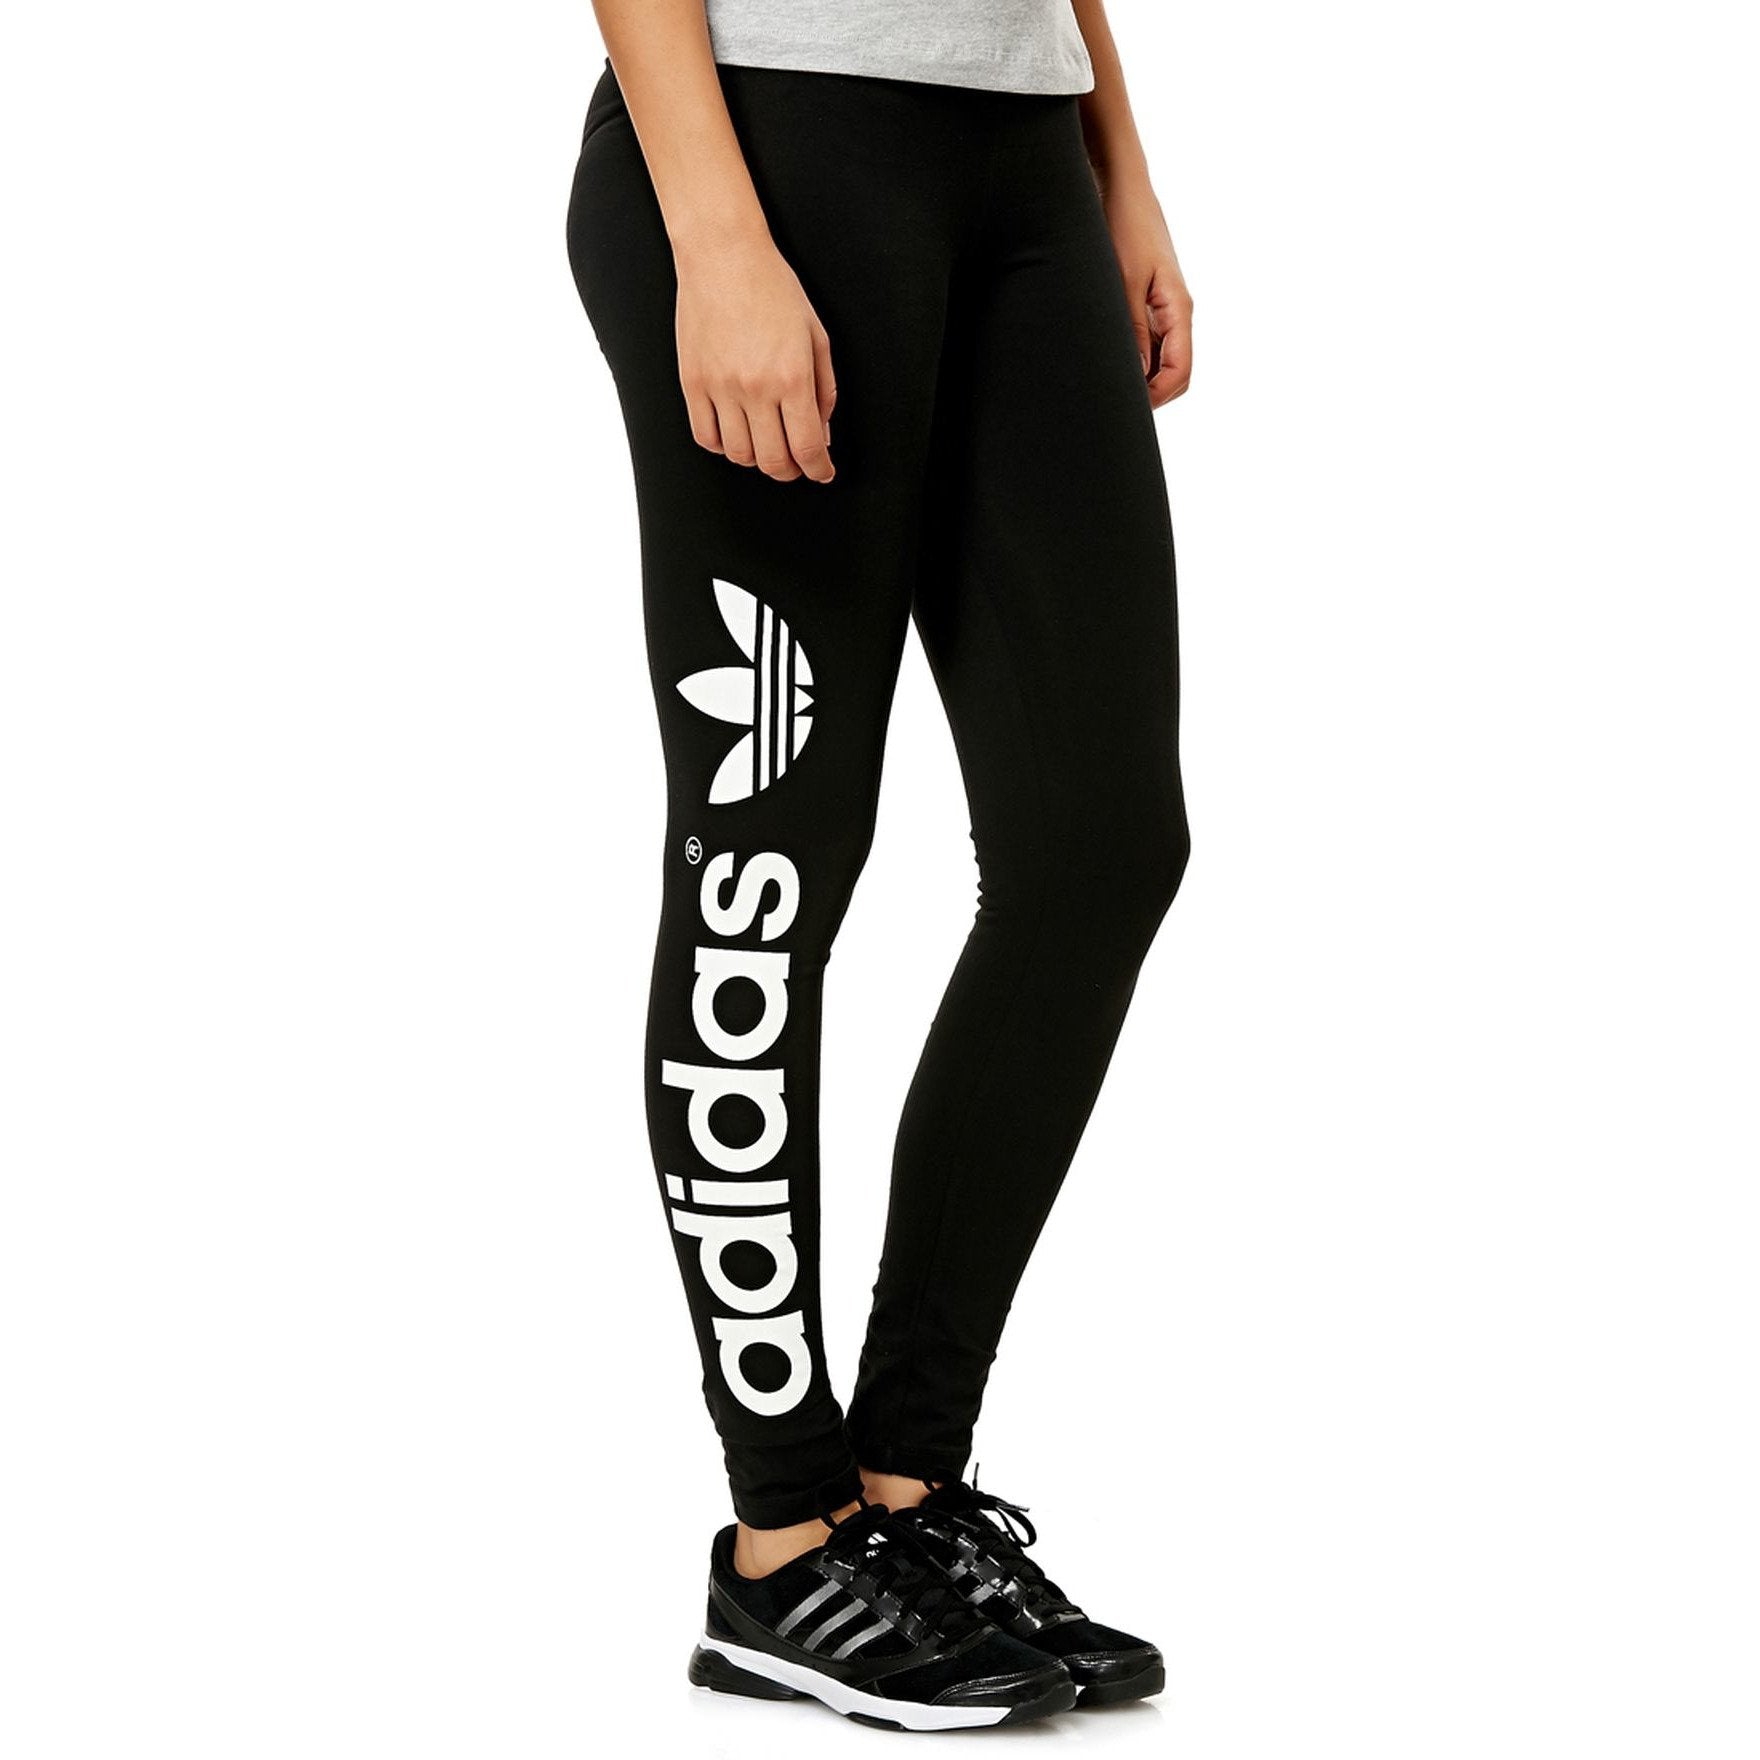 [G86235] Womens Adidas Originals Trefoil Legging